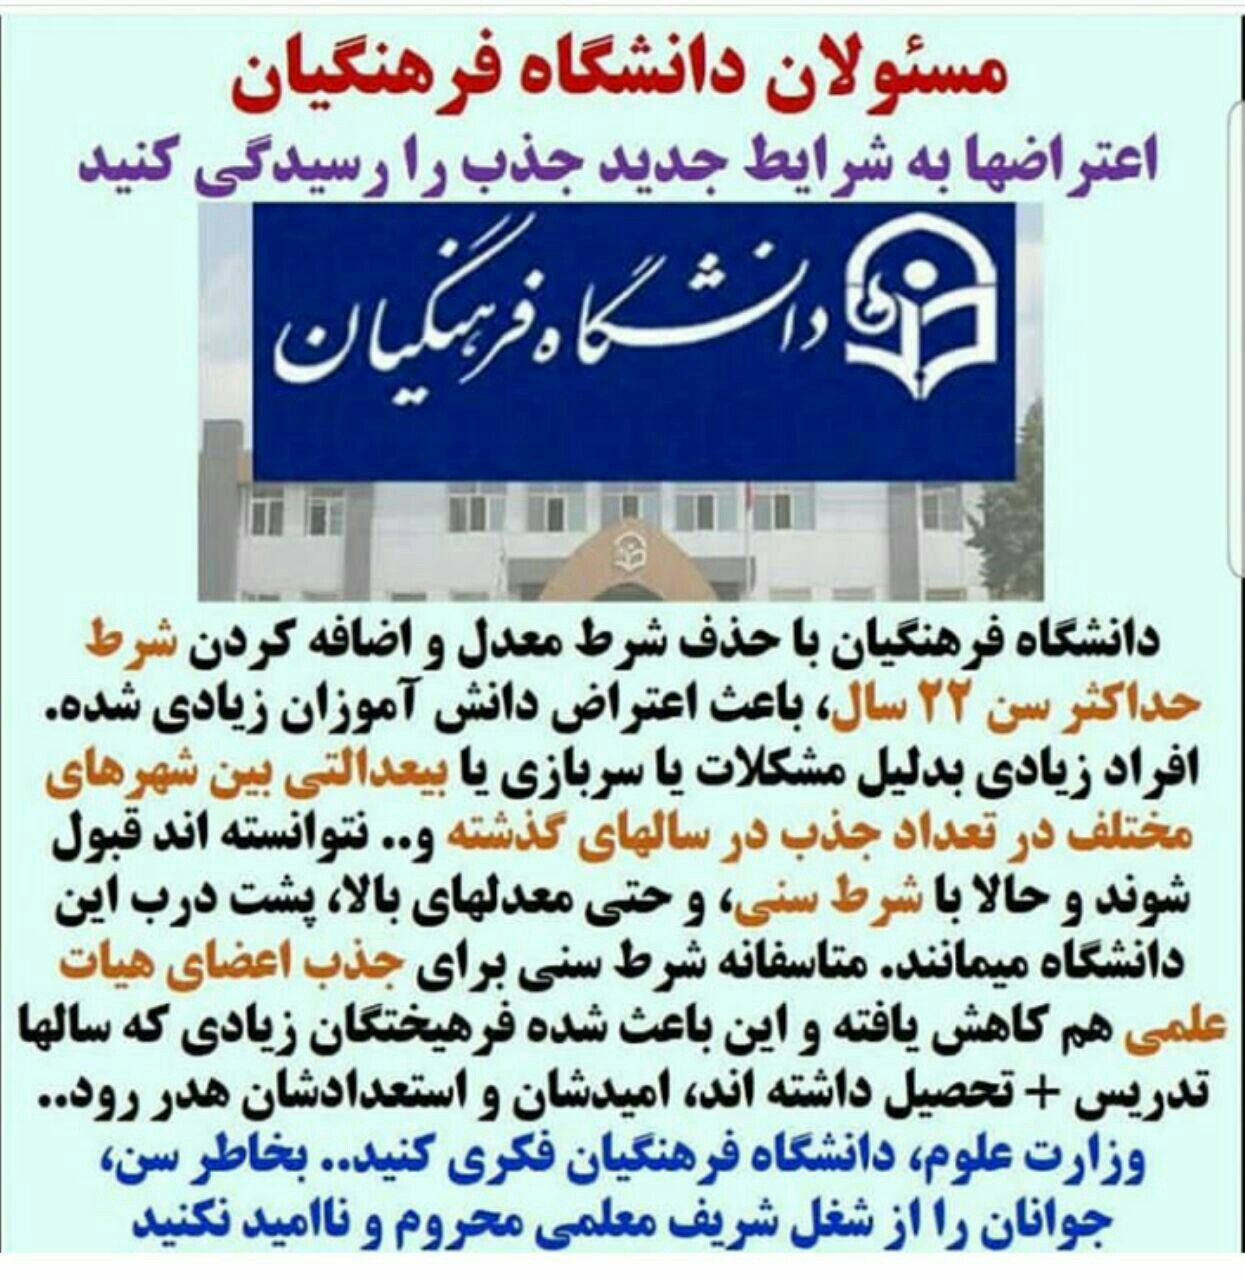 سختگیری دانشگاه فرهنگیان برای پذیرش معلمان آینده / از داوطلبان اصرار و از مسئولان نشنیدن!